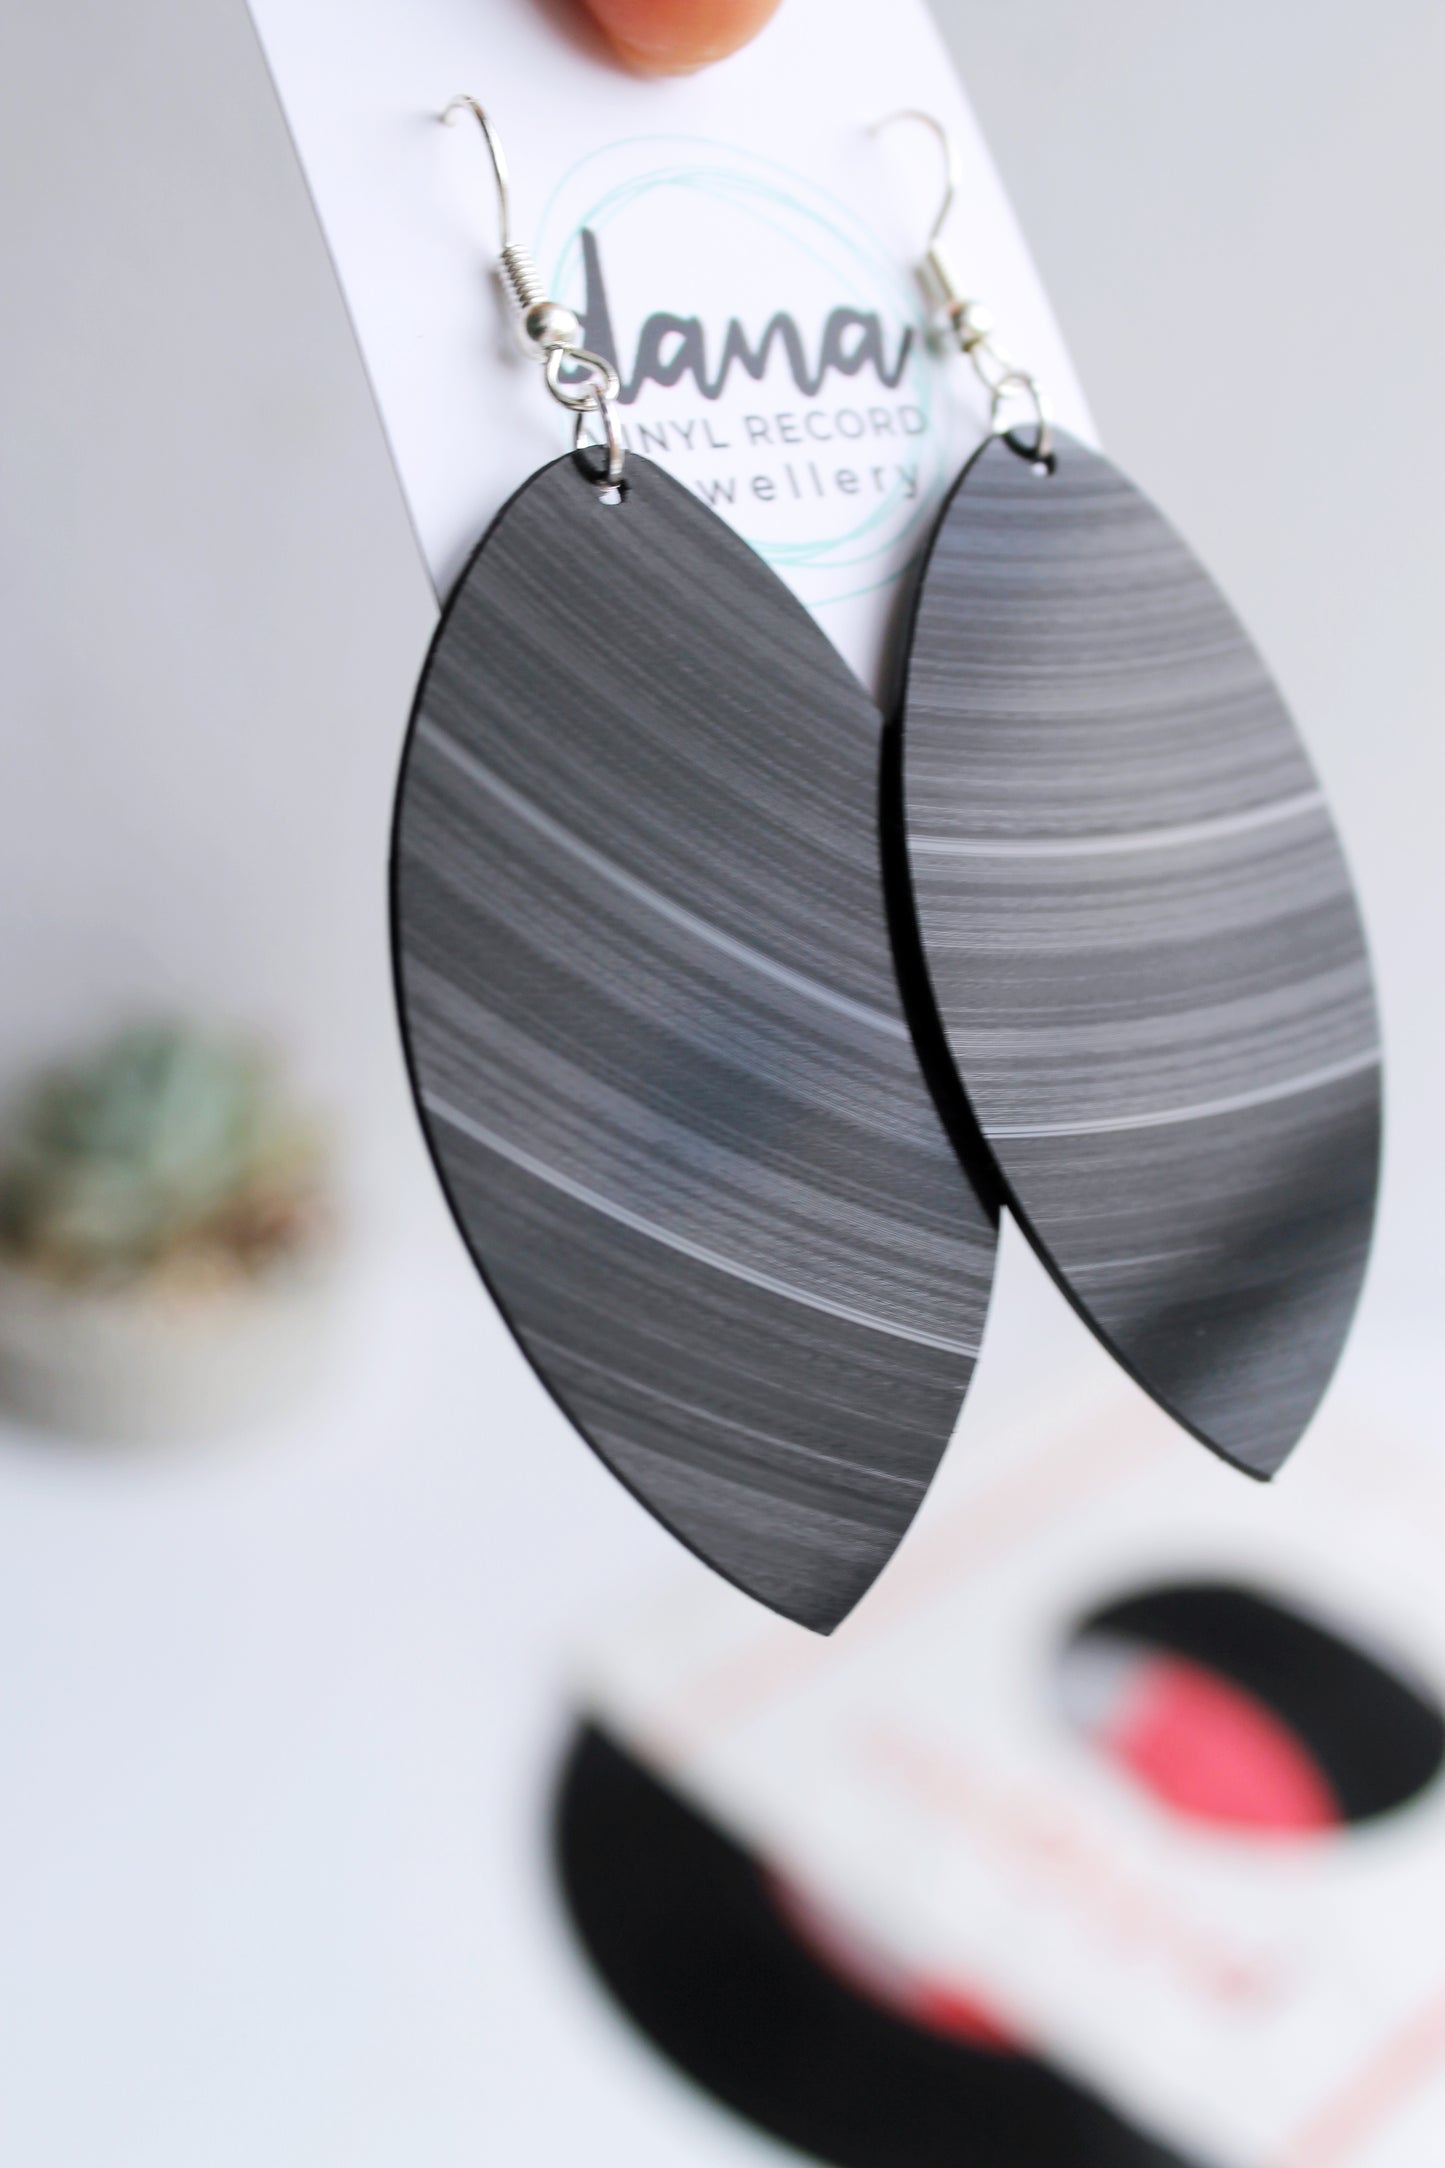 Large black leaf dangle earrings handmade from vinyl record